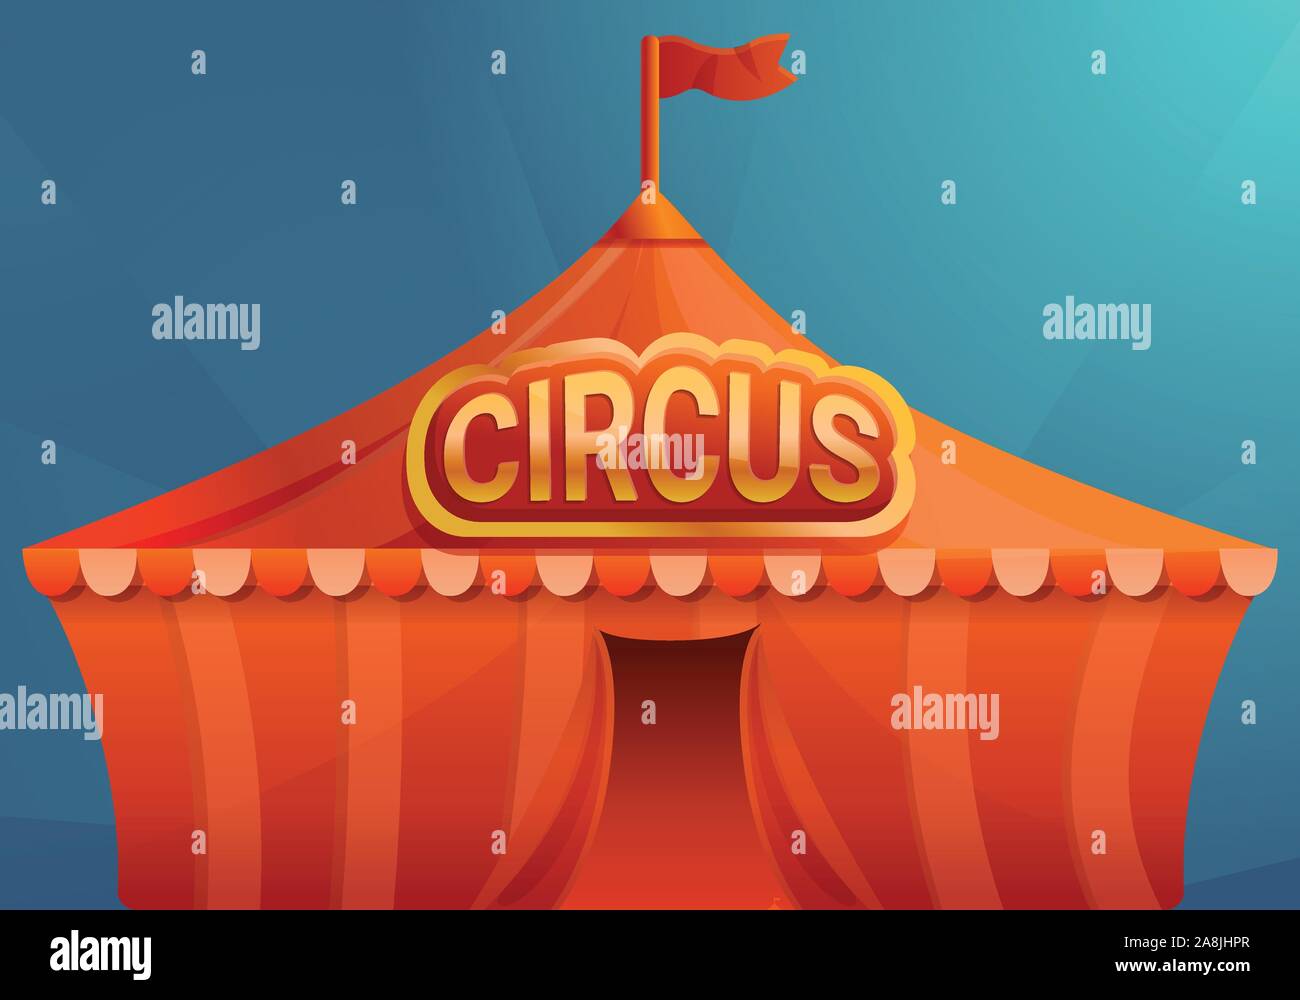 Zirkus auf blauem Hintergrund Konzept Banner. Cartoon Illustration des Zirkus auf blauem Hintergrund vektor Konzept Banner für Web Design Stock Vektor